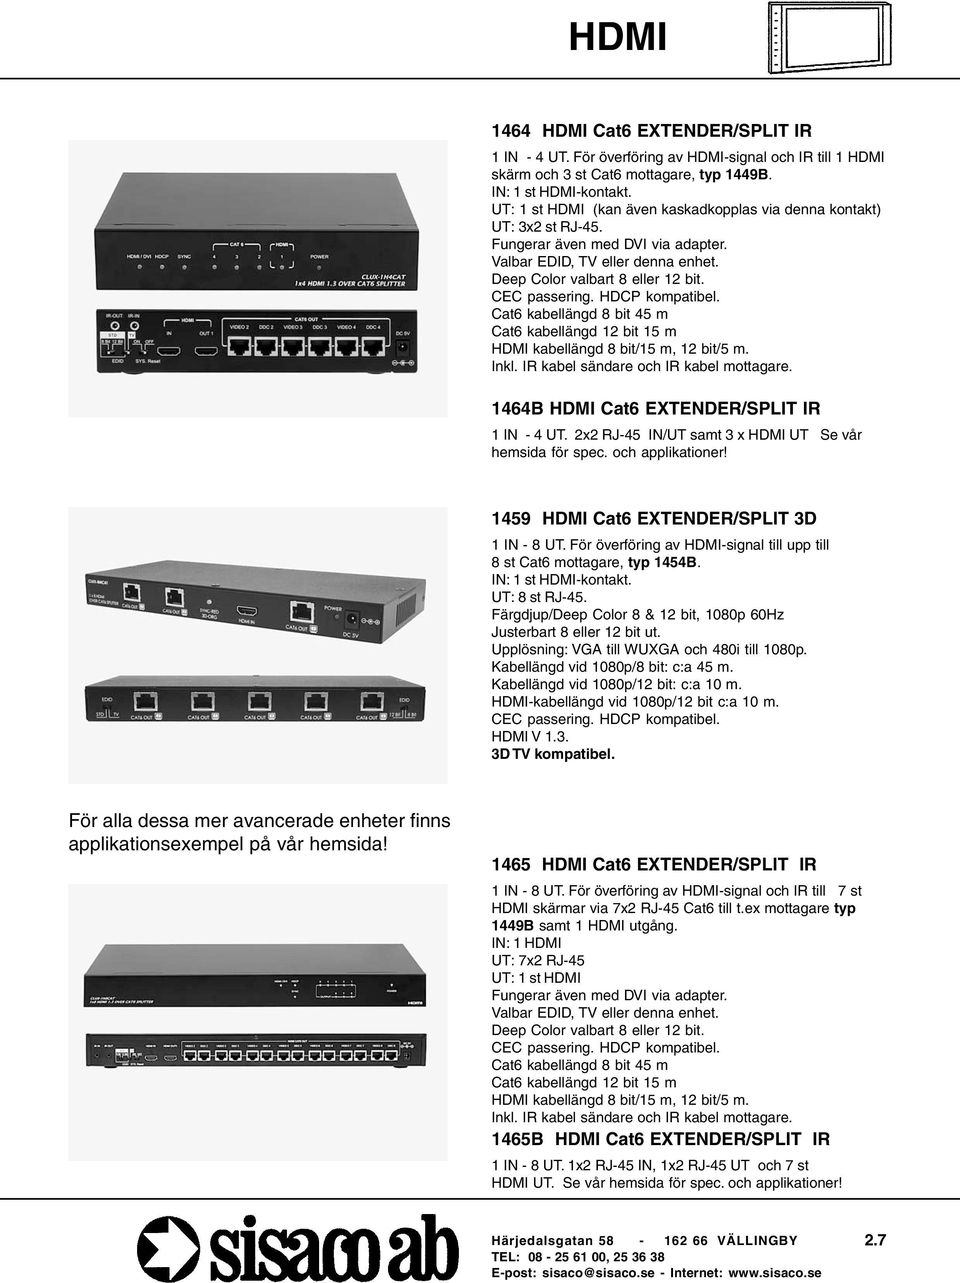 HDCP kompatibel. Cat6 kabellängd 8 bit 45 m Cat6 kabellängd 12 bit 15 m HDMI kabellängd 8 bit/15 m, 12 bit/5 m. Inkl. IR kabel sändare och IR kabel mottagare.